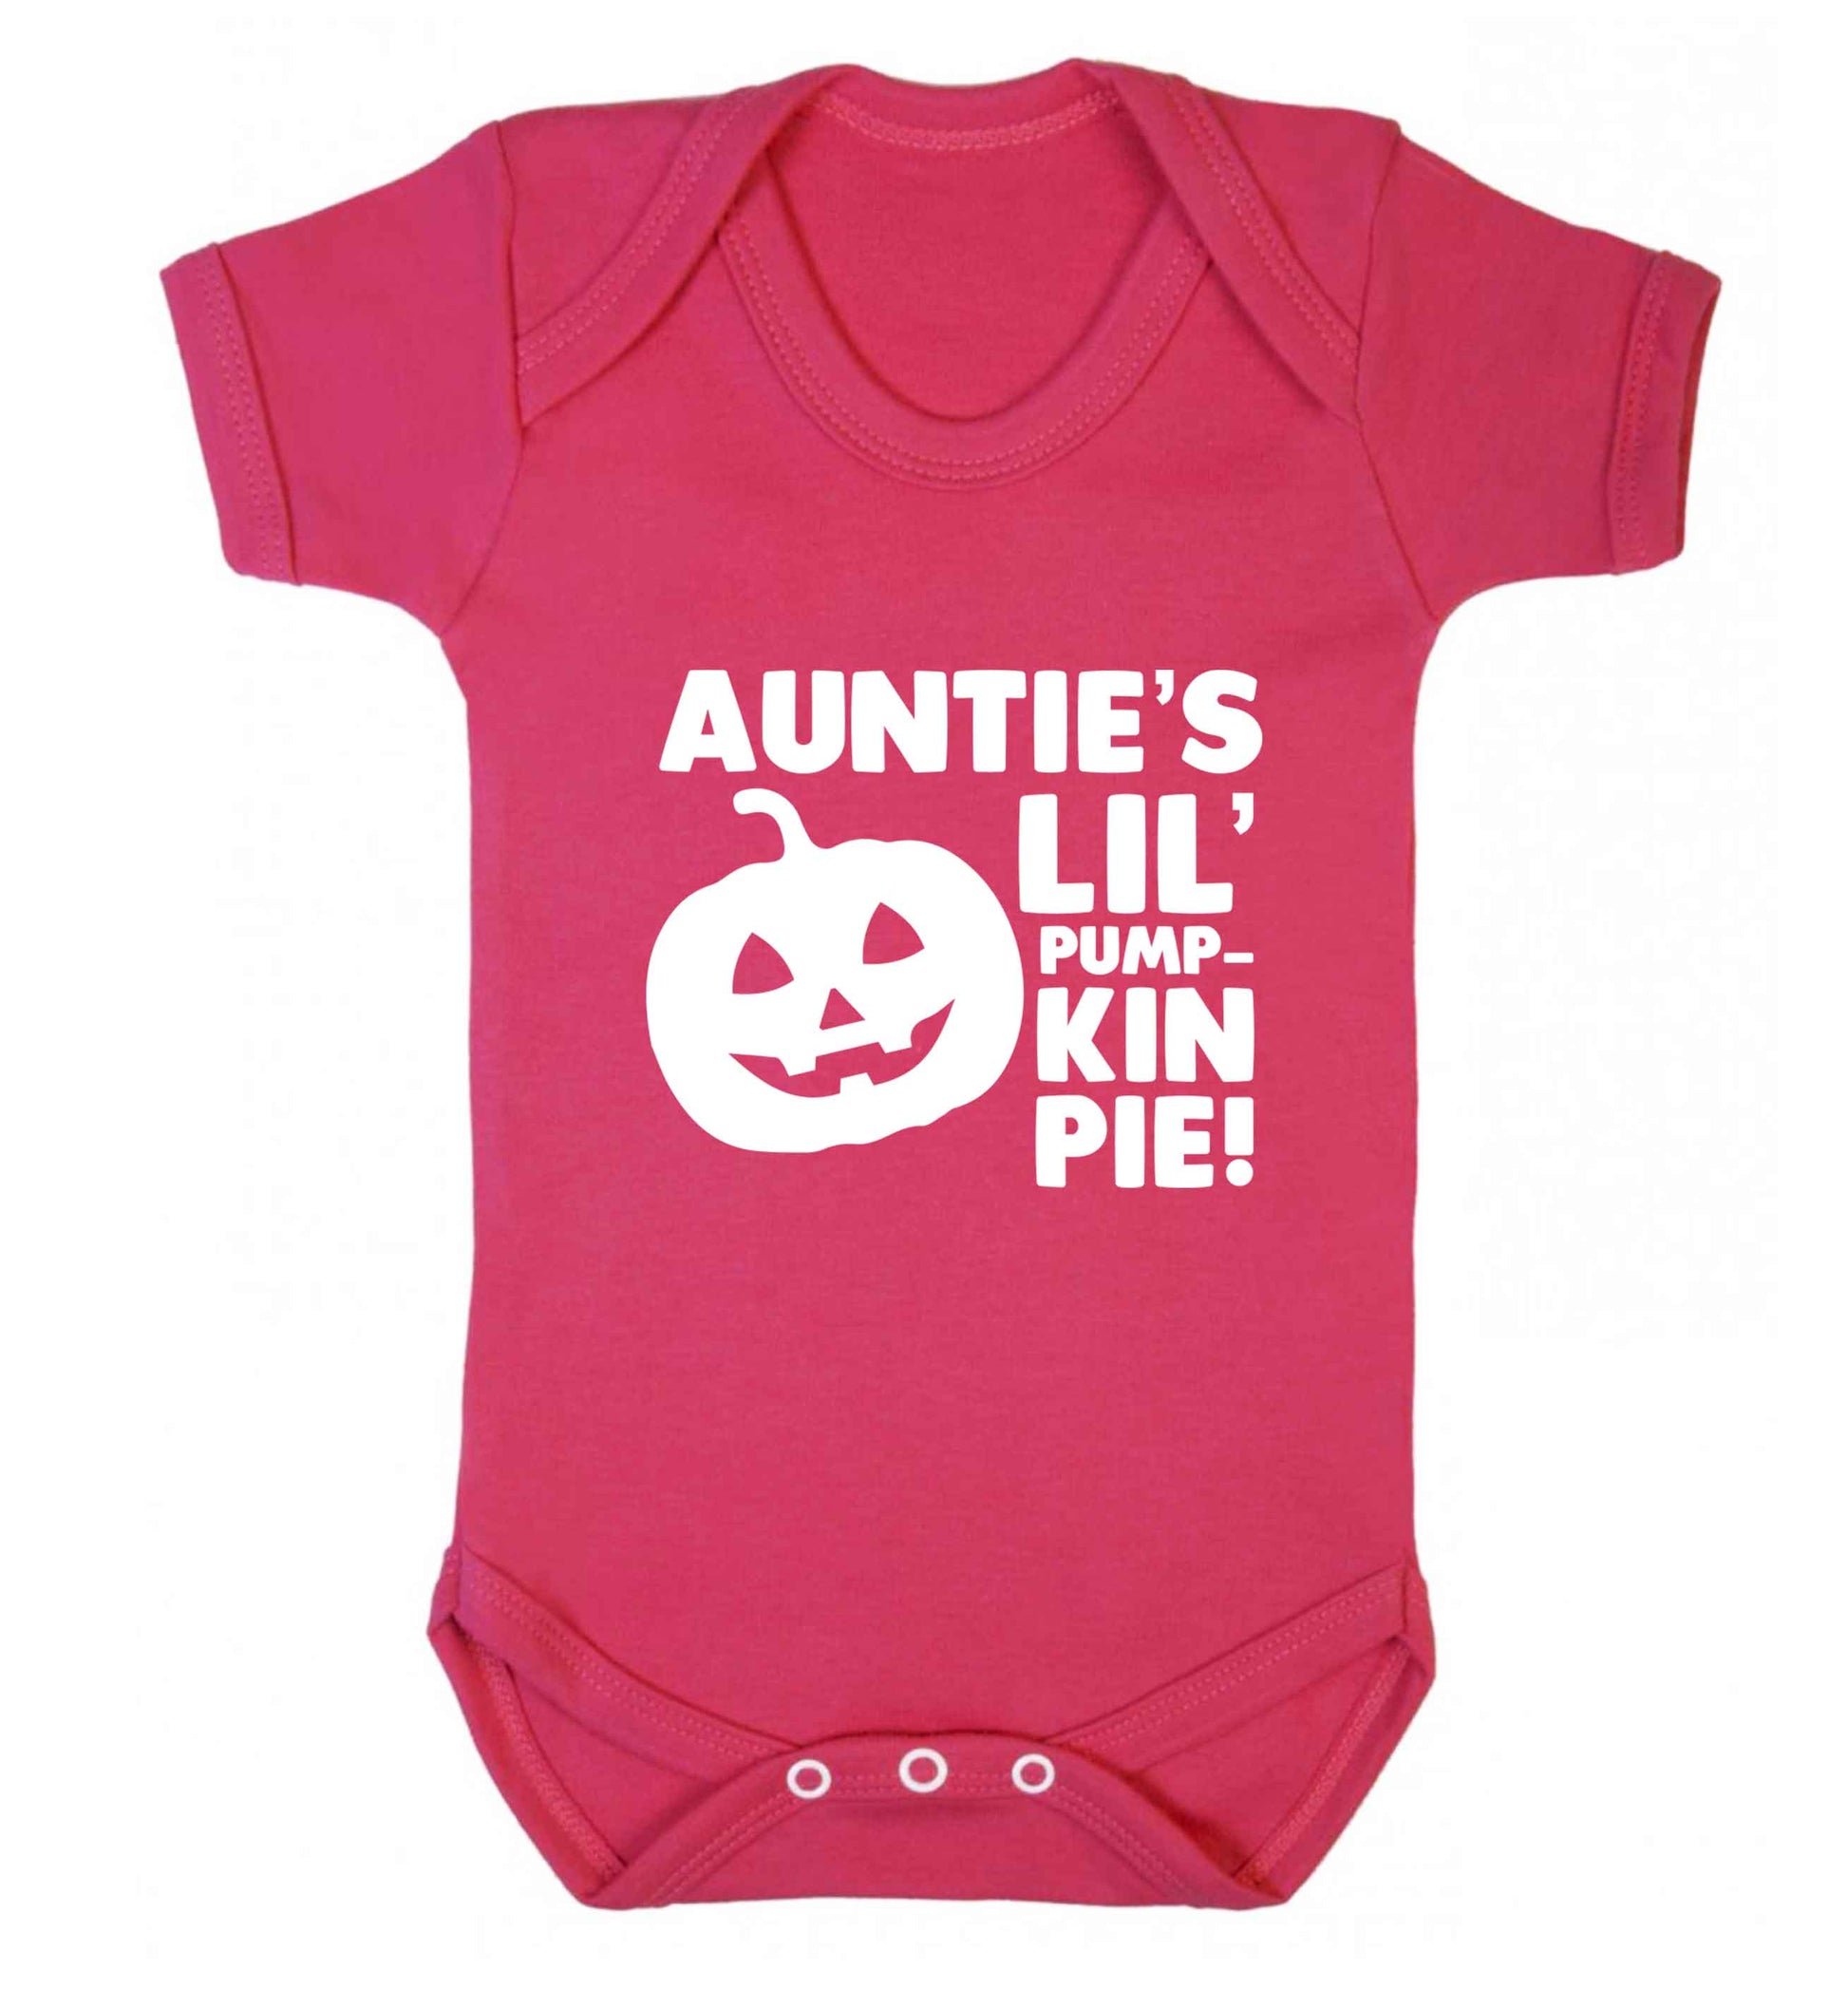 Auntie's lil' pumpkin pie baby vest dark pink 18-24 months